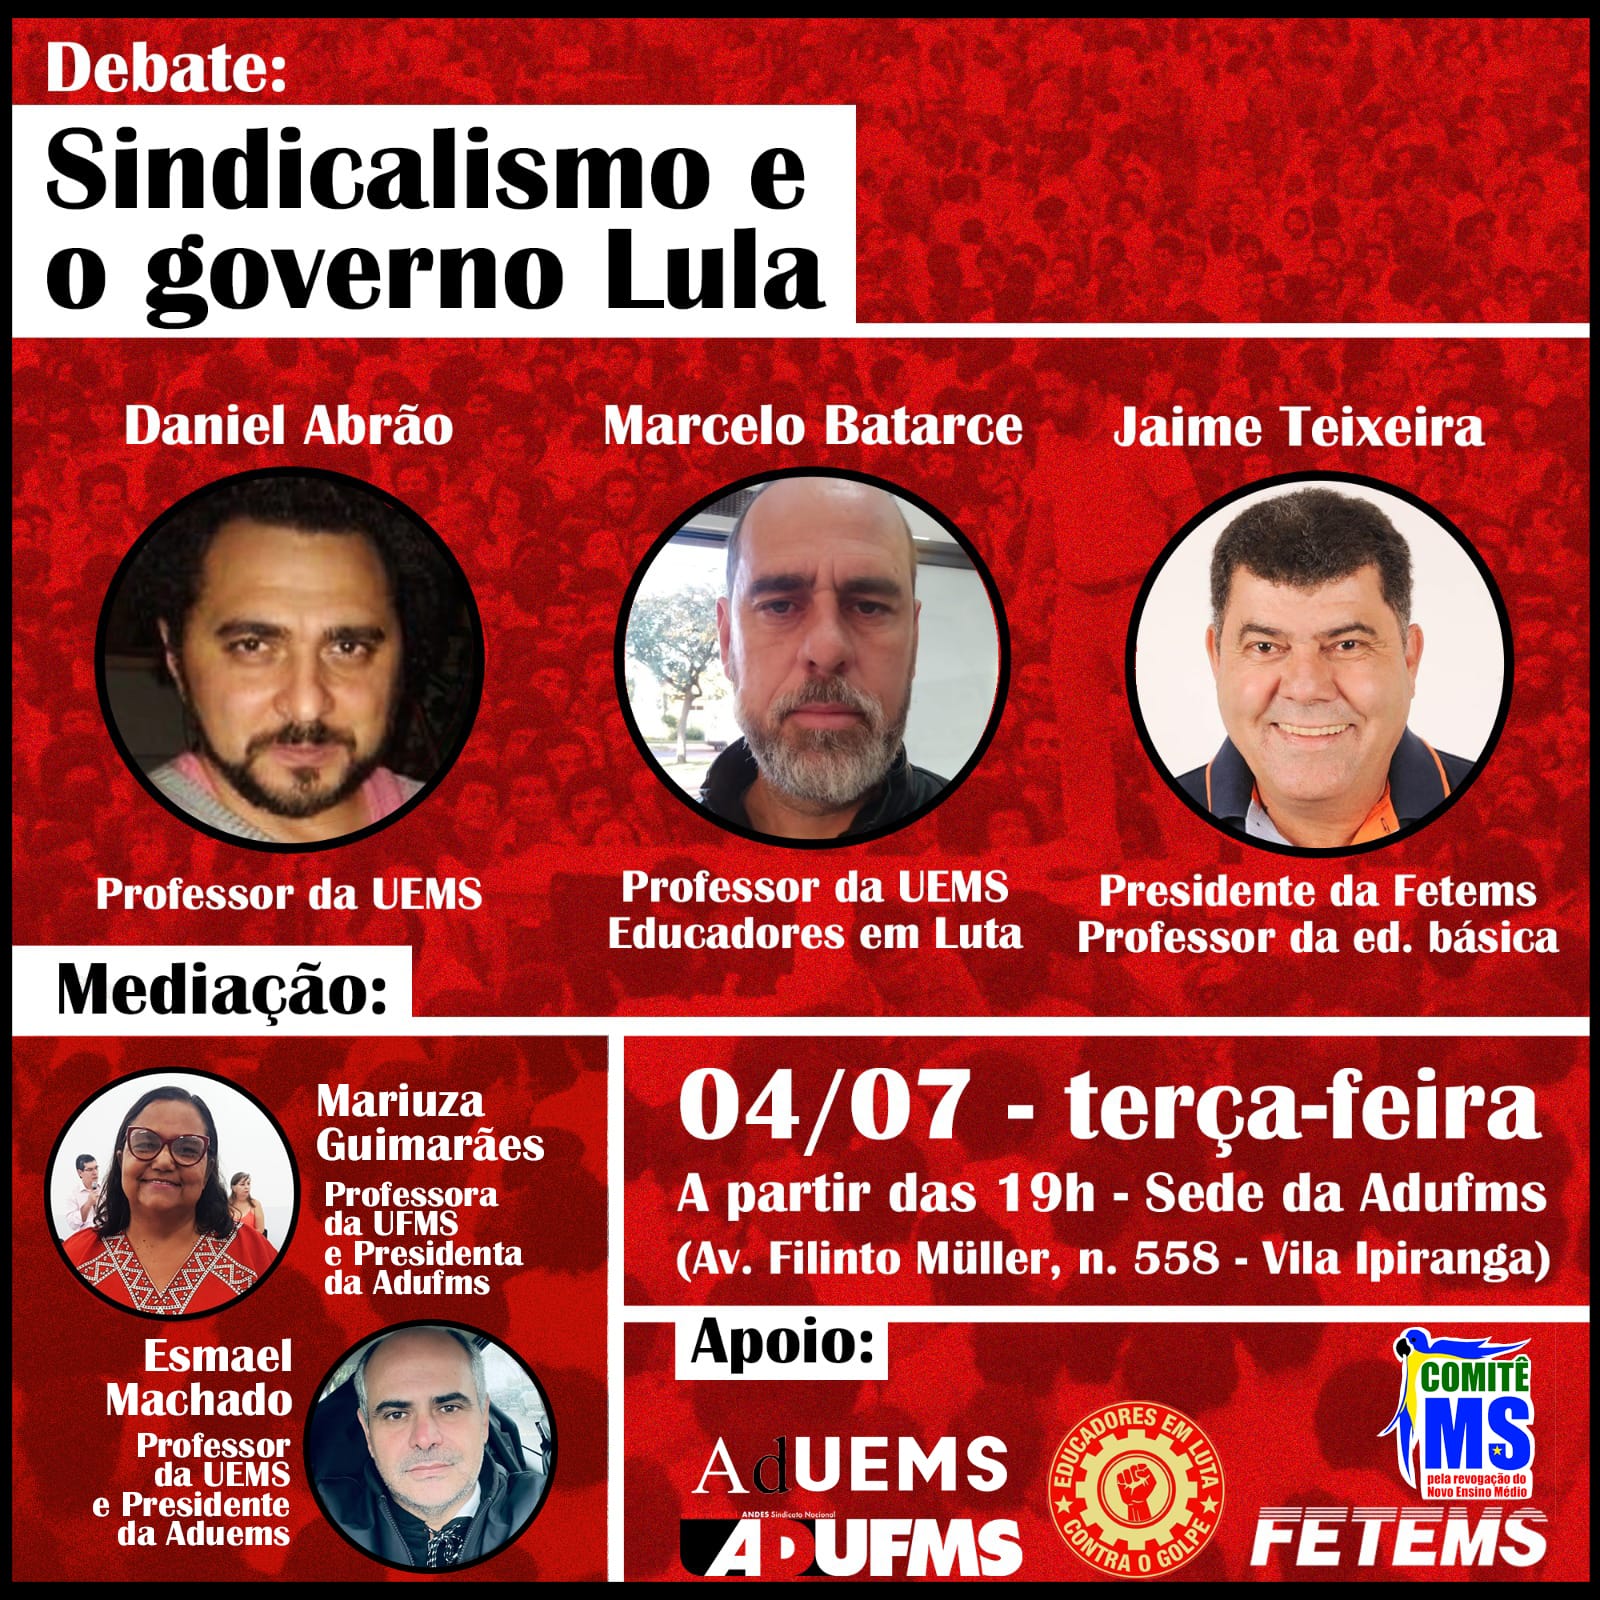 Sindicalismo e governo Lula serão debatidos nesta terça na Adufms